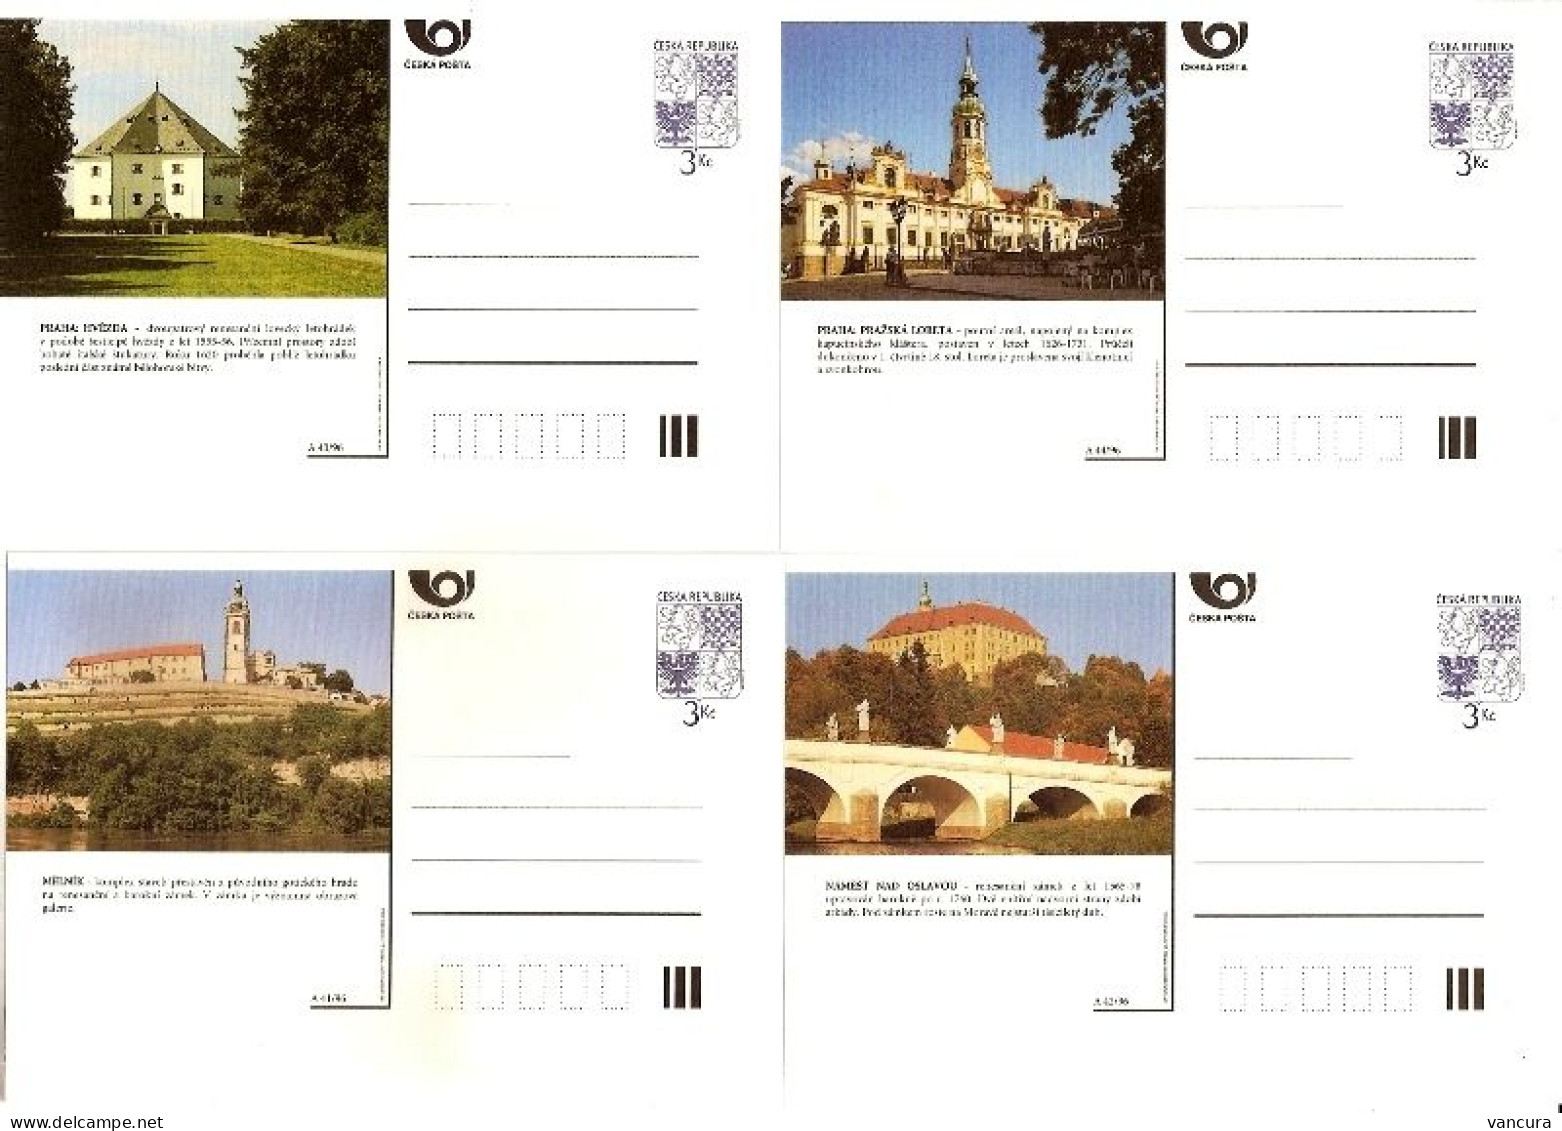 CDV 19 A Czech Republic Architecture 1996 - Castillos